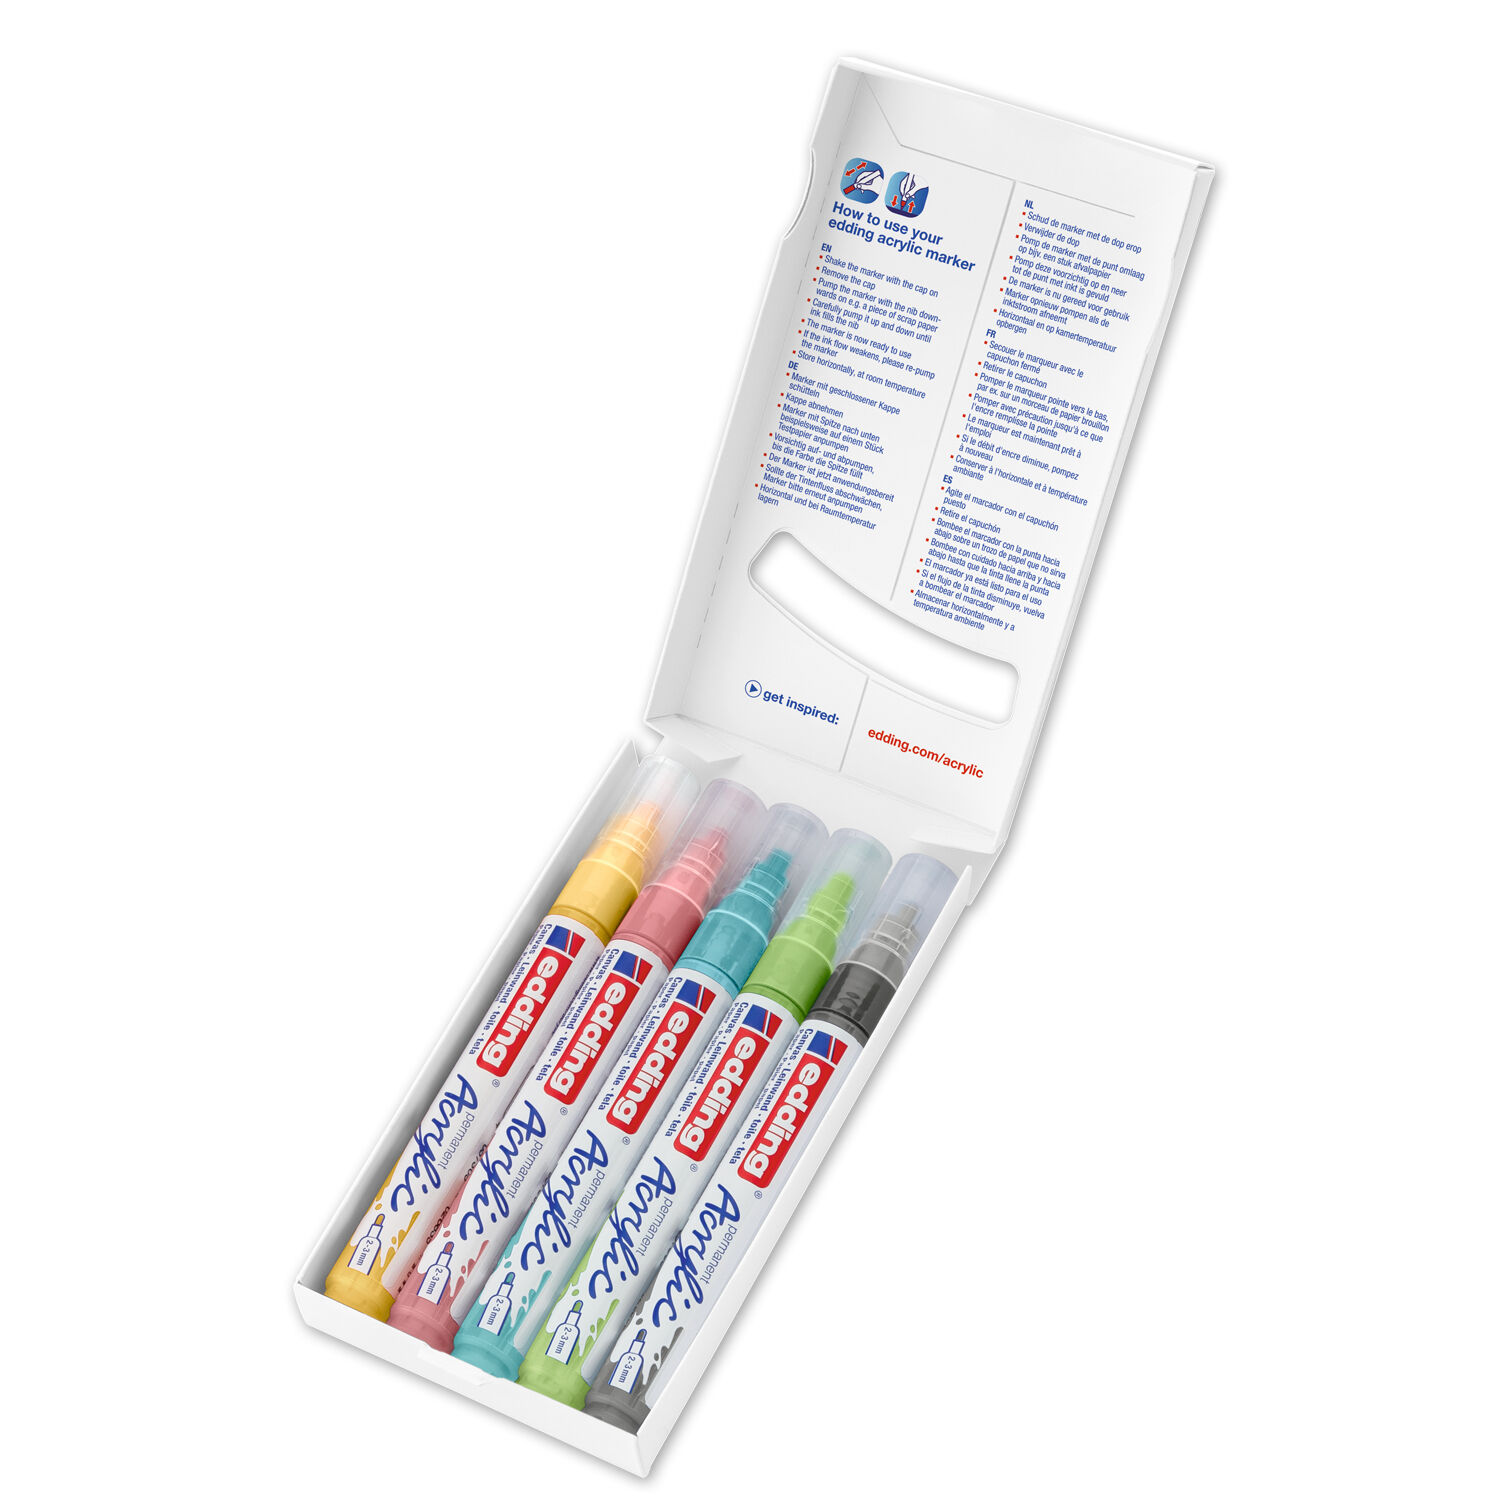 NEU Edding 5100 Acrylmarker-Acrylstifte-Set mit den Farben grau, gelb, blau, grn, rosa, Rundspitze 2-3 mm, 5er-Set-Pastell Bild 2